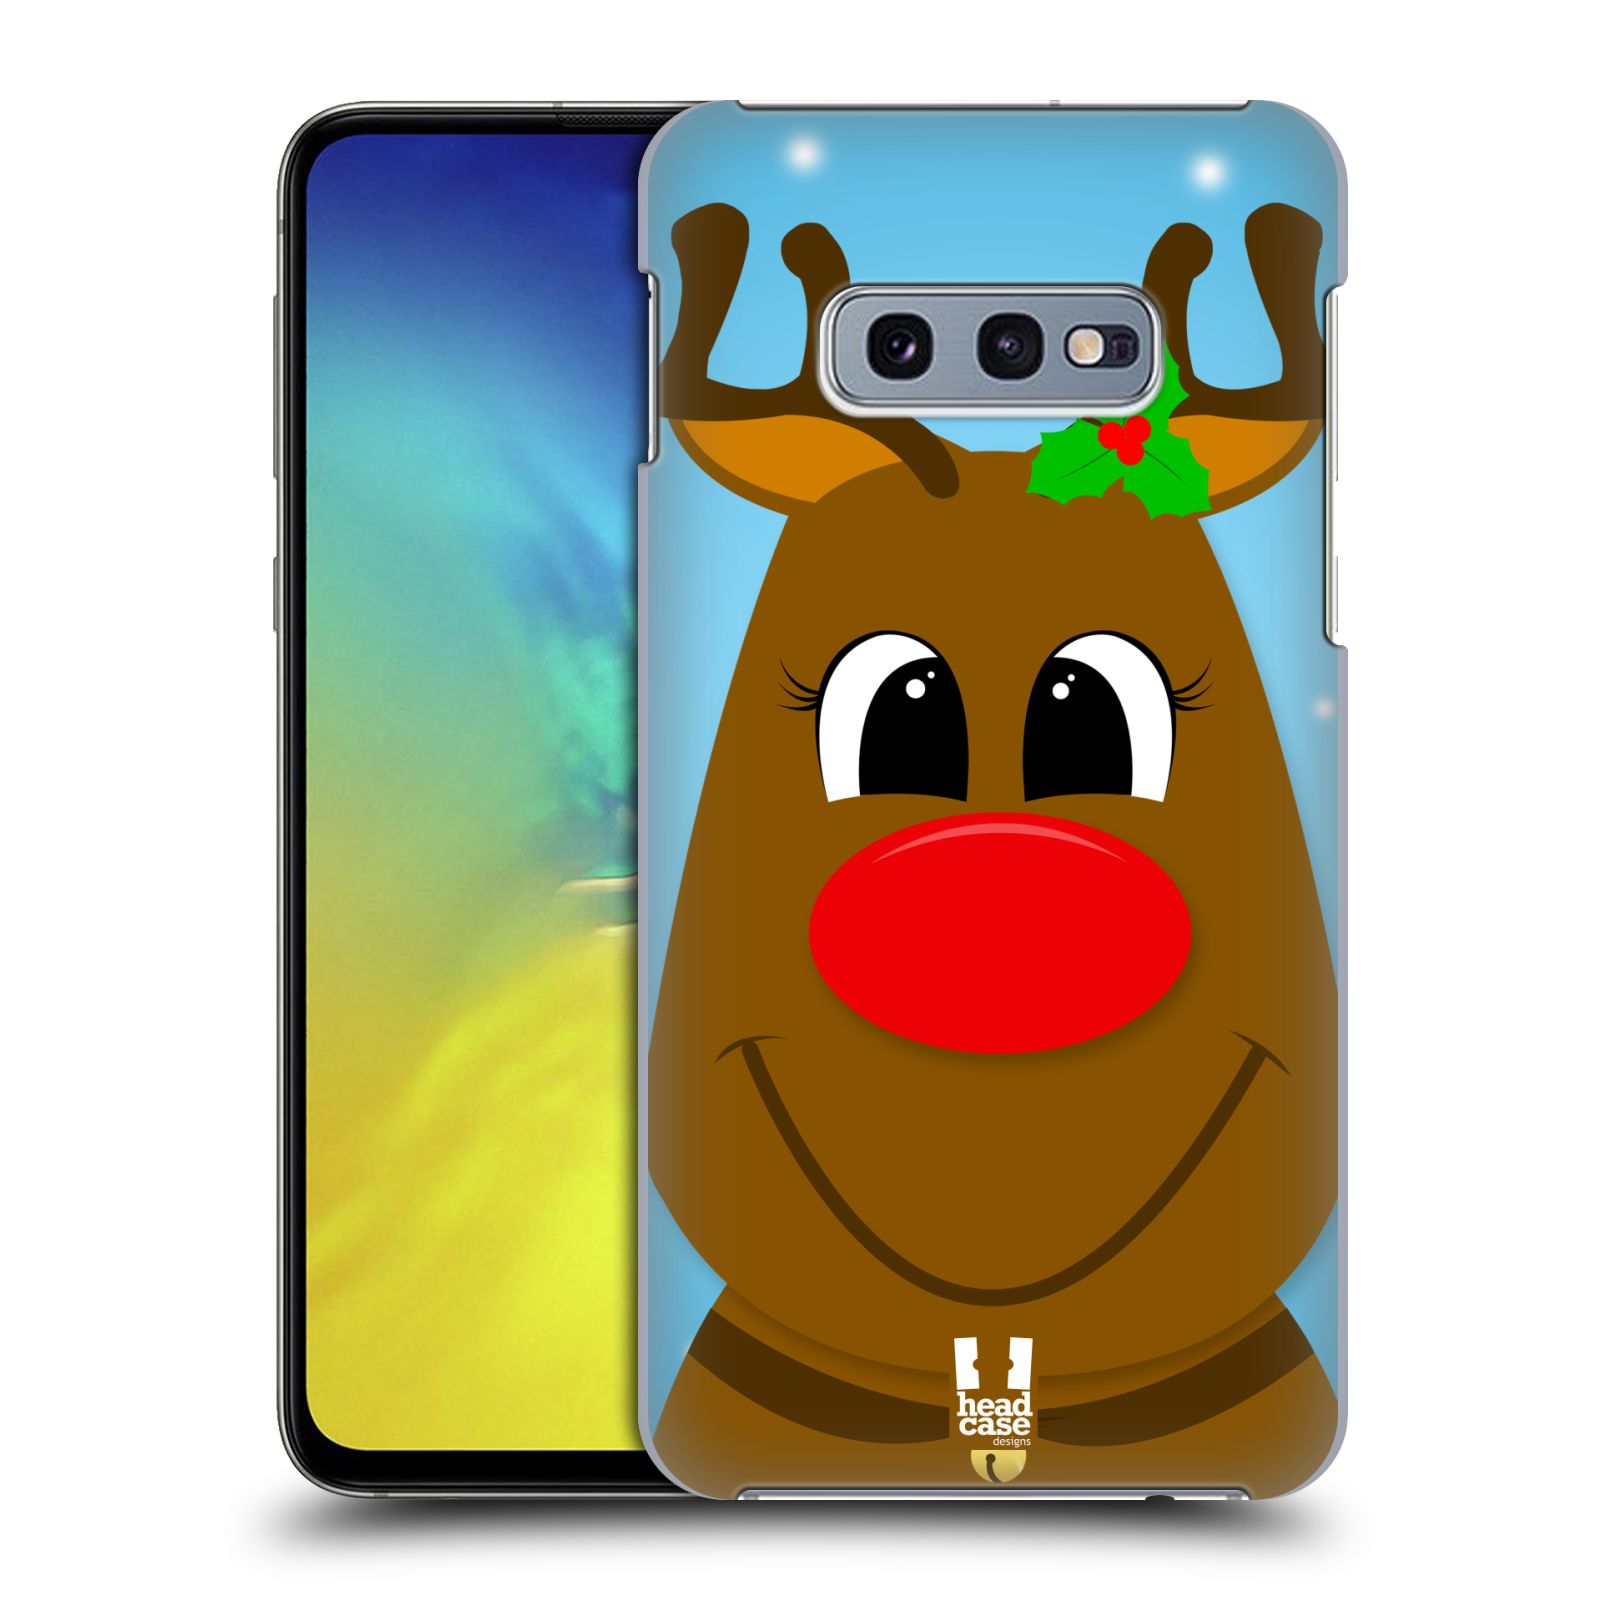 Pouzdro na mobil Samsung Galaxy S10e - HEAD CASE - vzor Vánoční tváře kreslené SOB RUDOLF